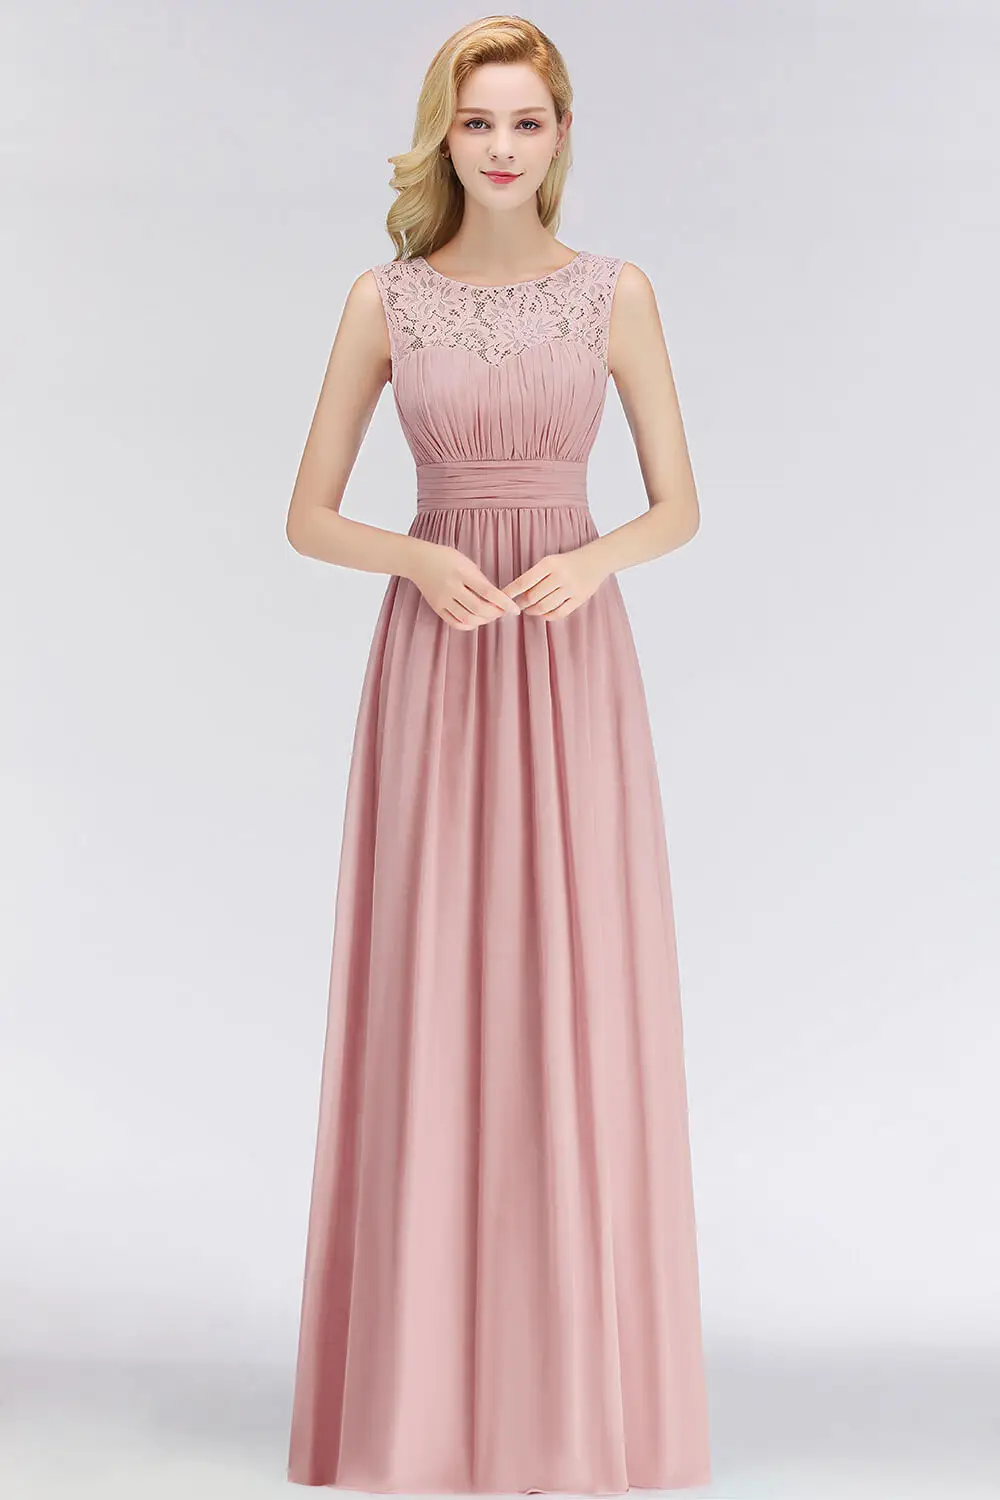 Popodion вечерние платья, длинное шифоновое формальное платье с длинным рукавом, вечернее платье ROM80180